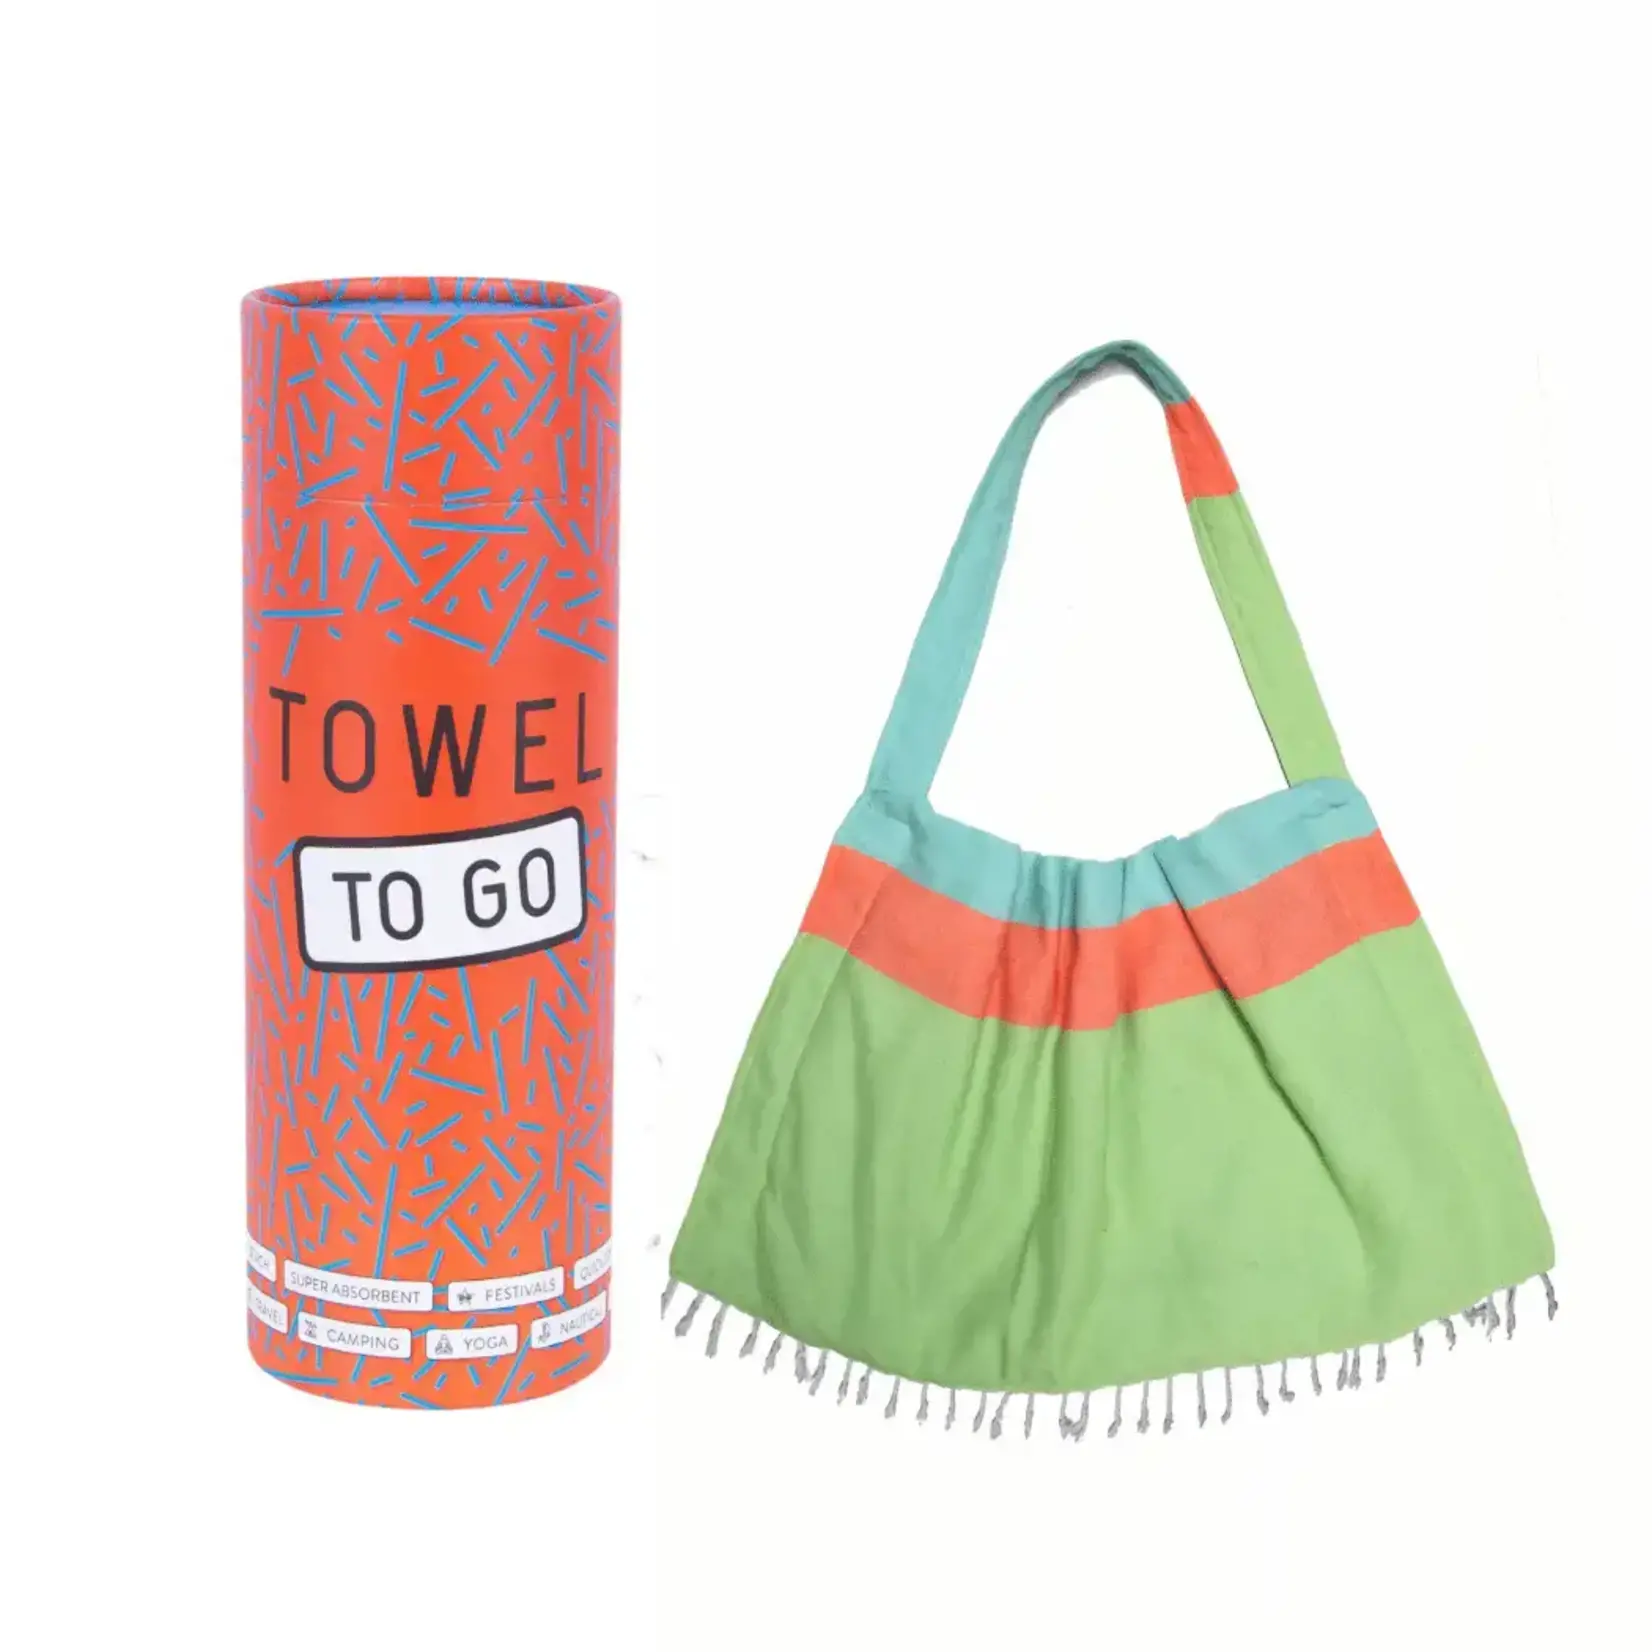 TOWEL TO GO Hamamtuch und Tasche "Two in One" grün - blau - orange